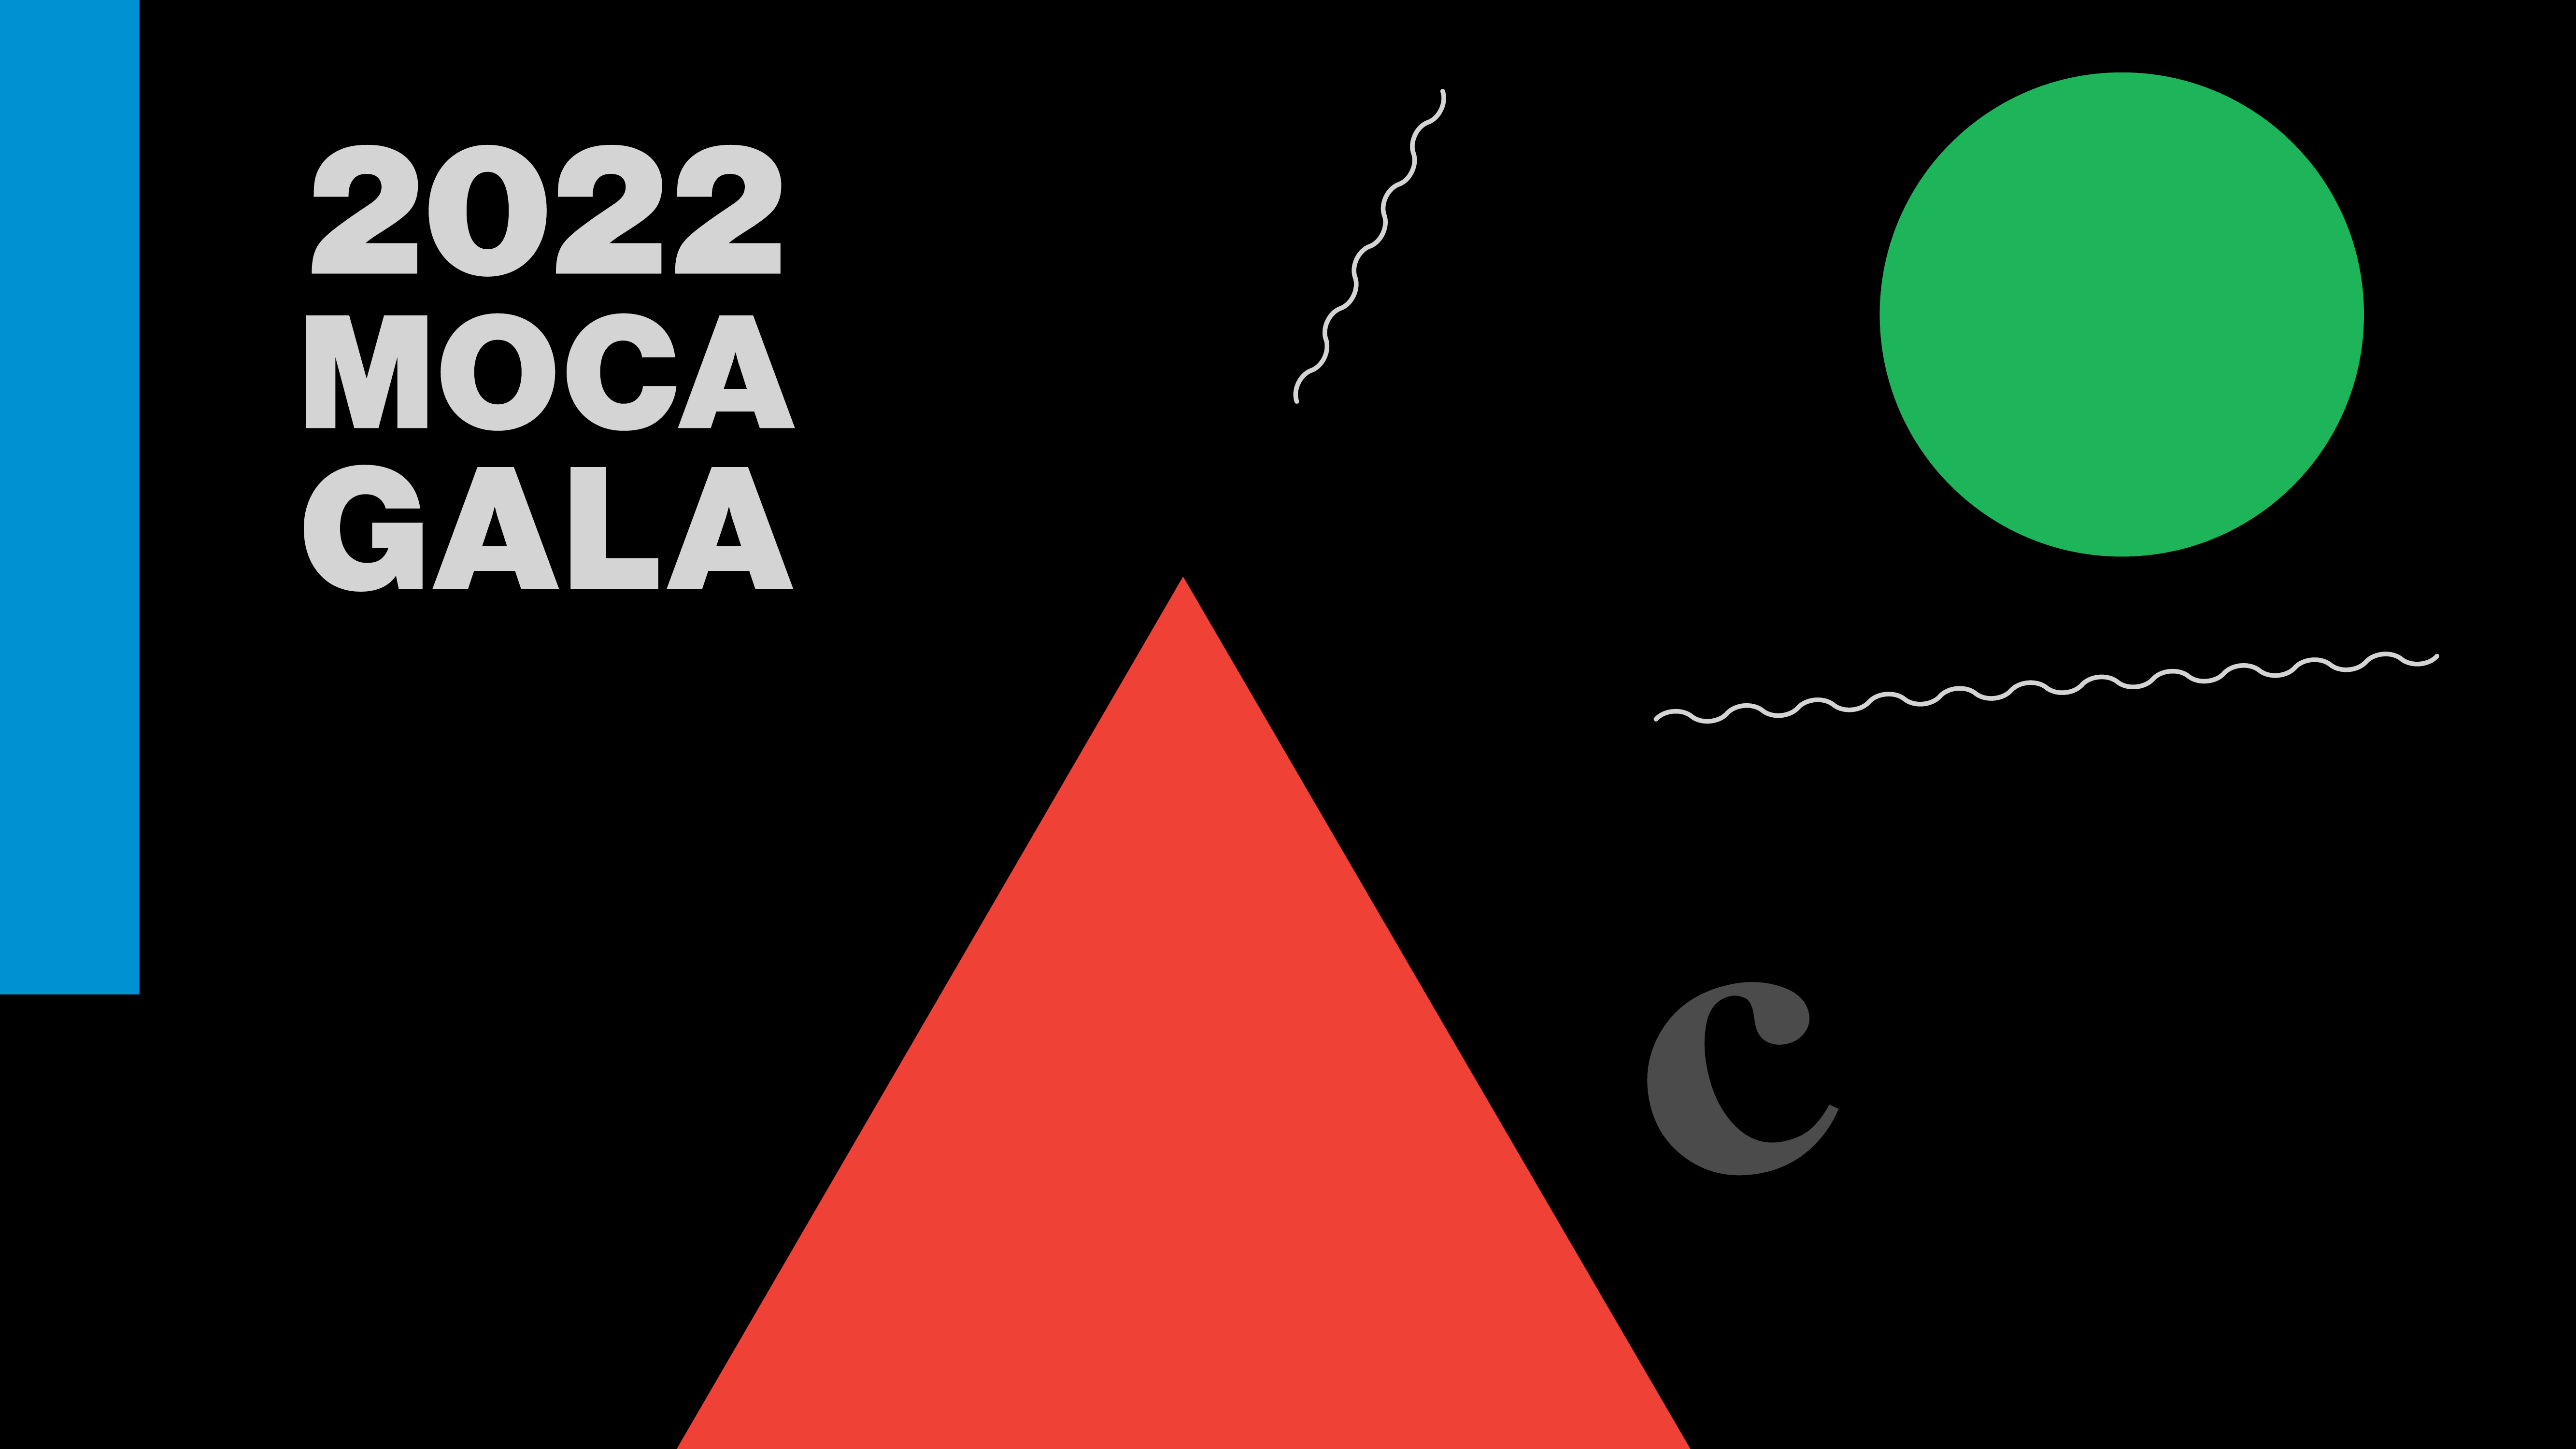 MOCA Gala 2022 • MOCA